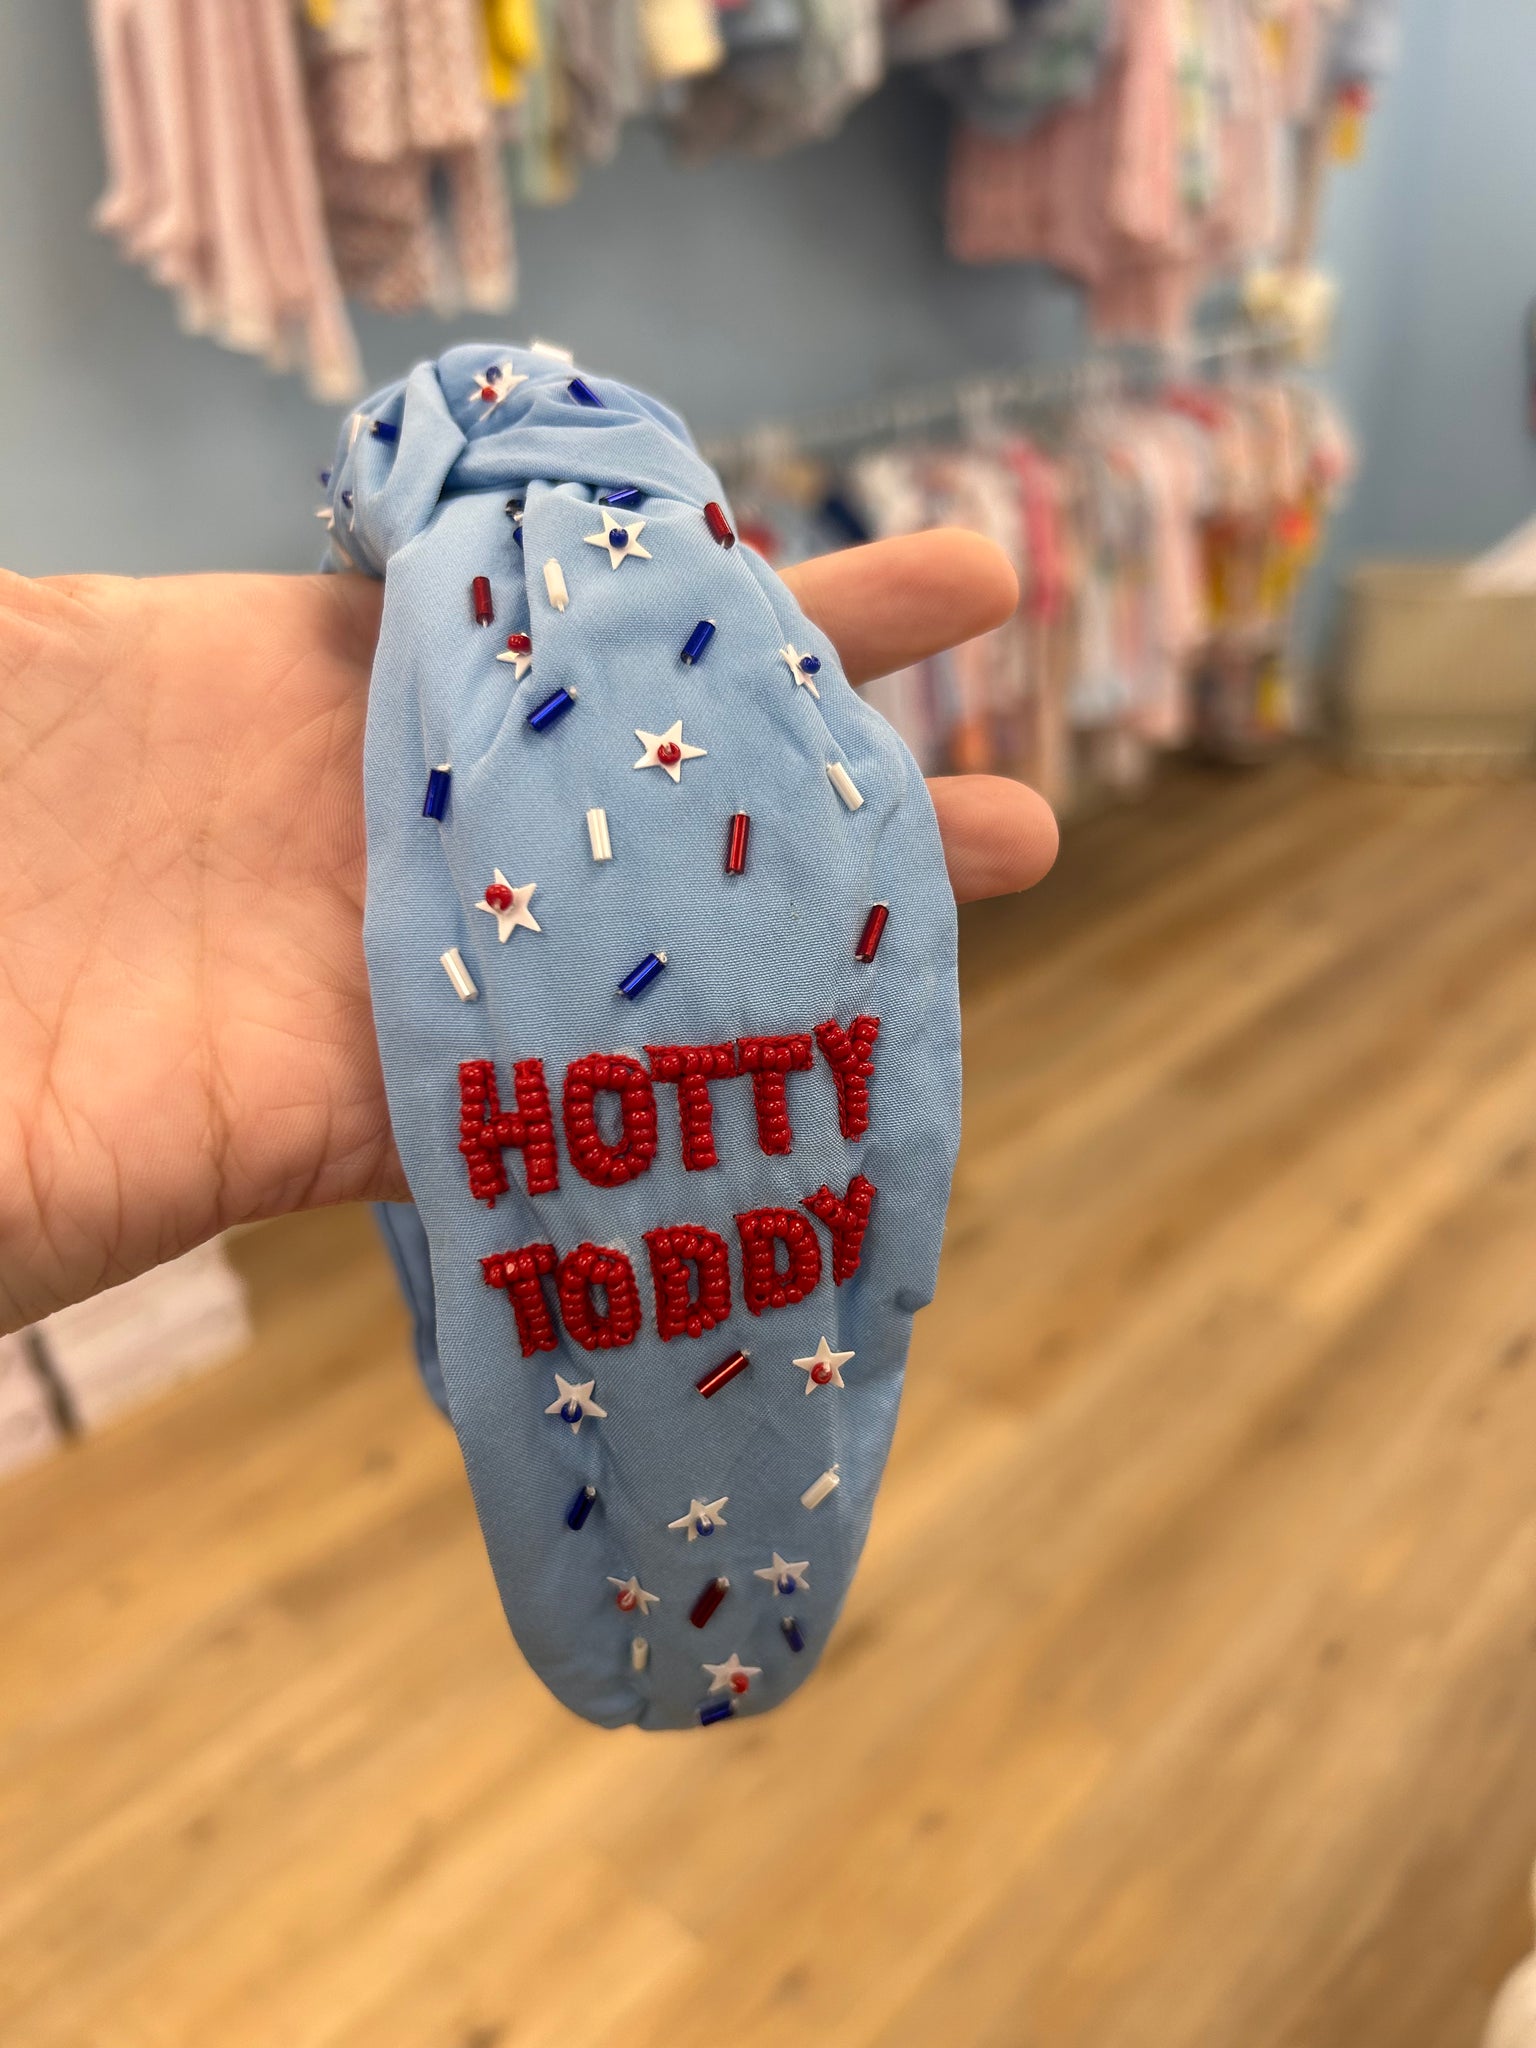 Hotty Toddy Headband